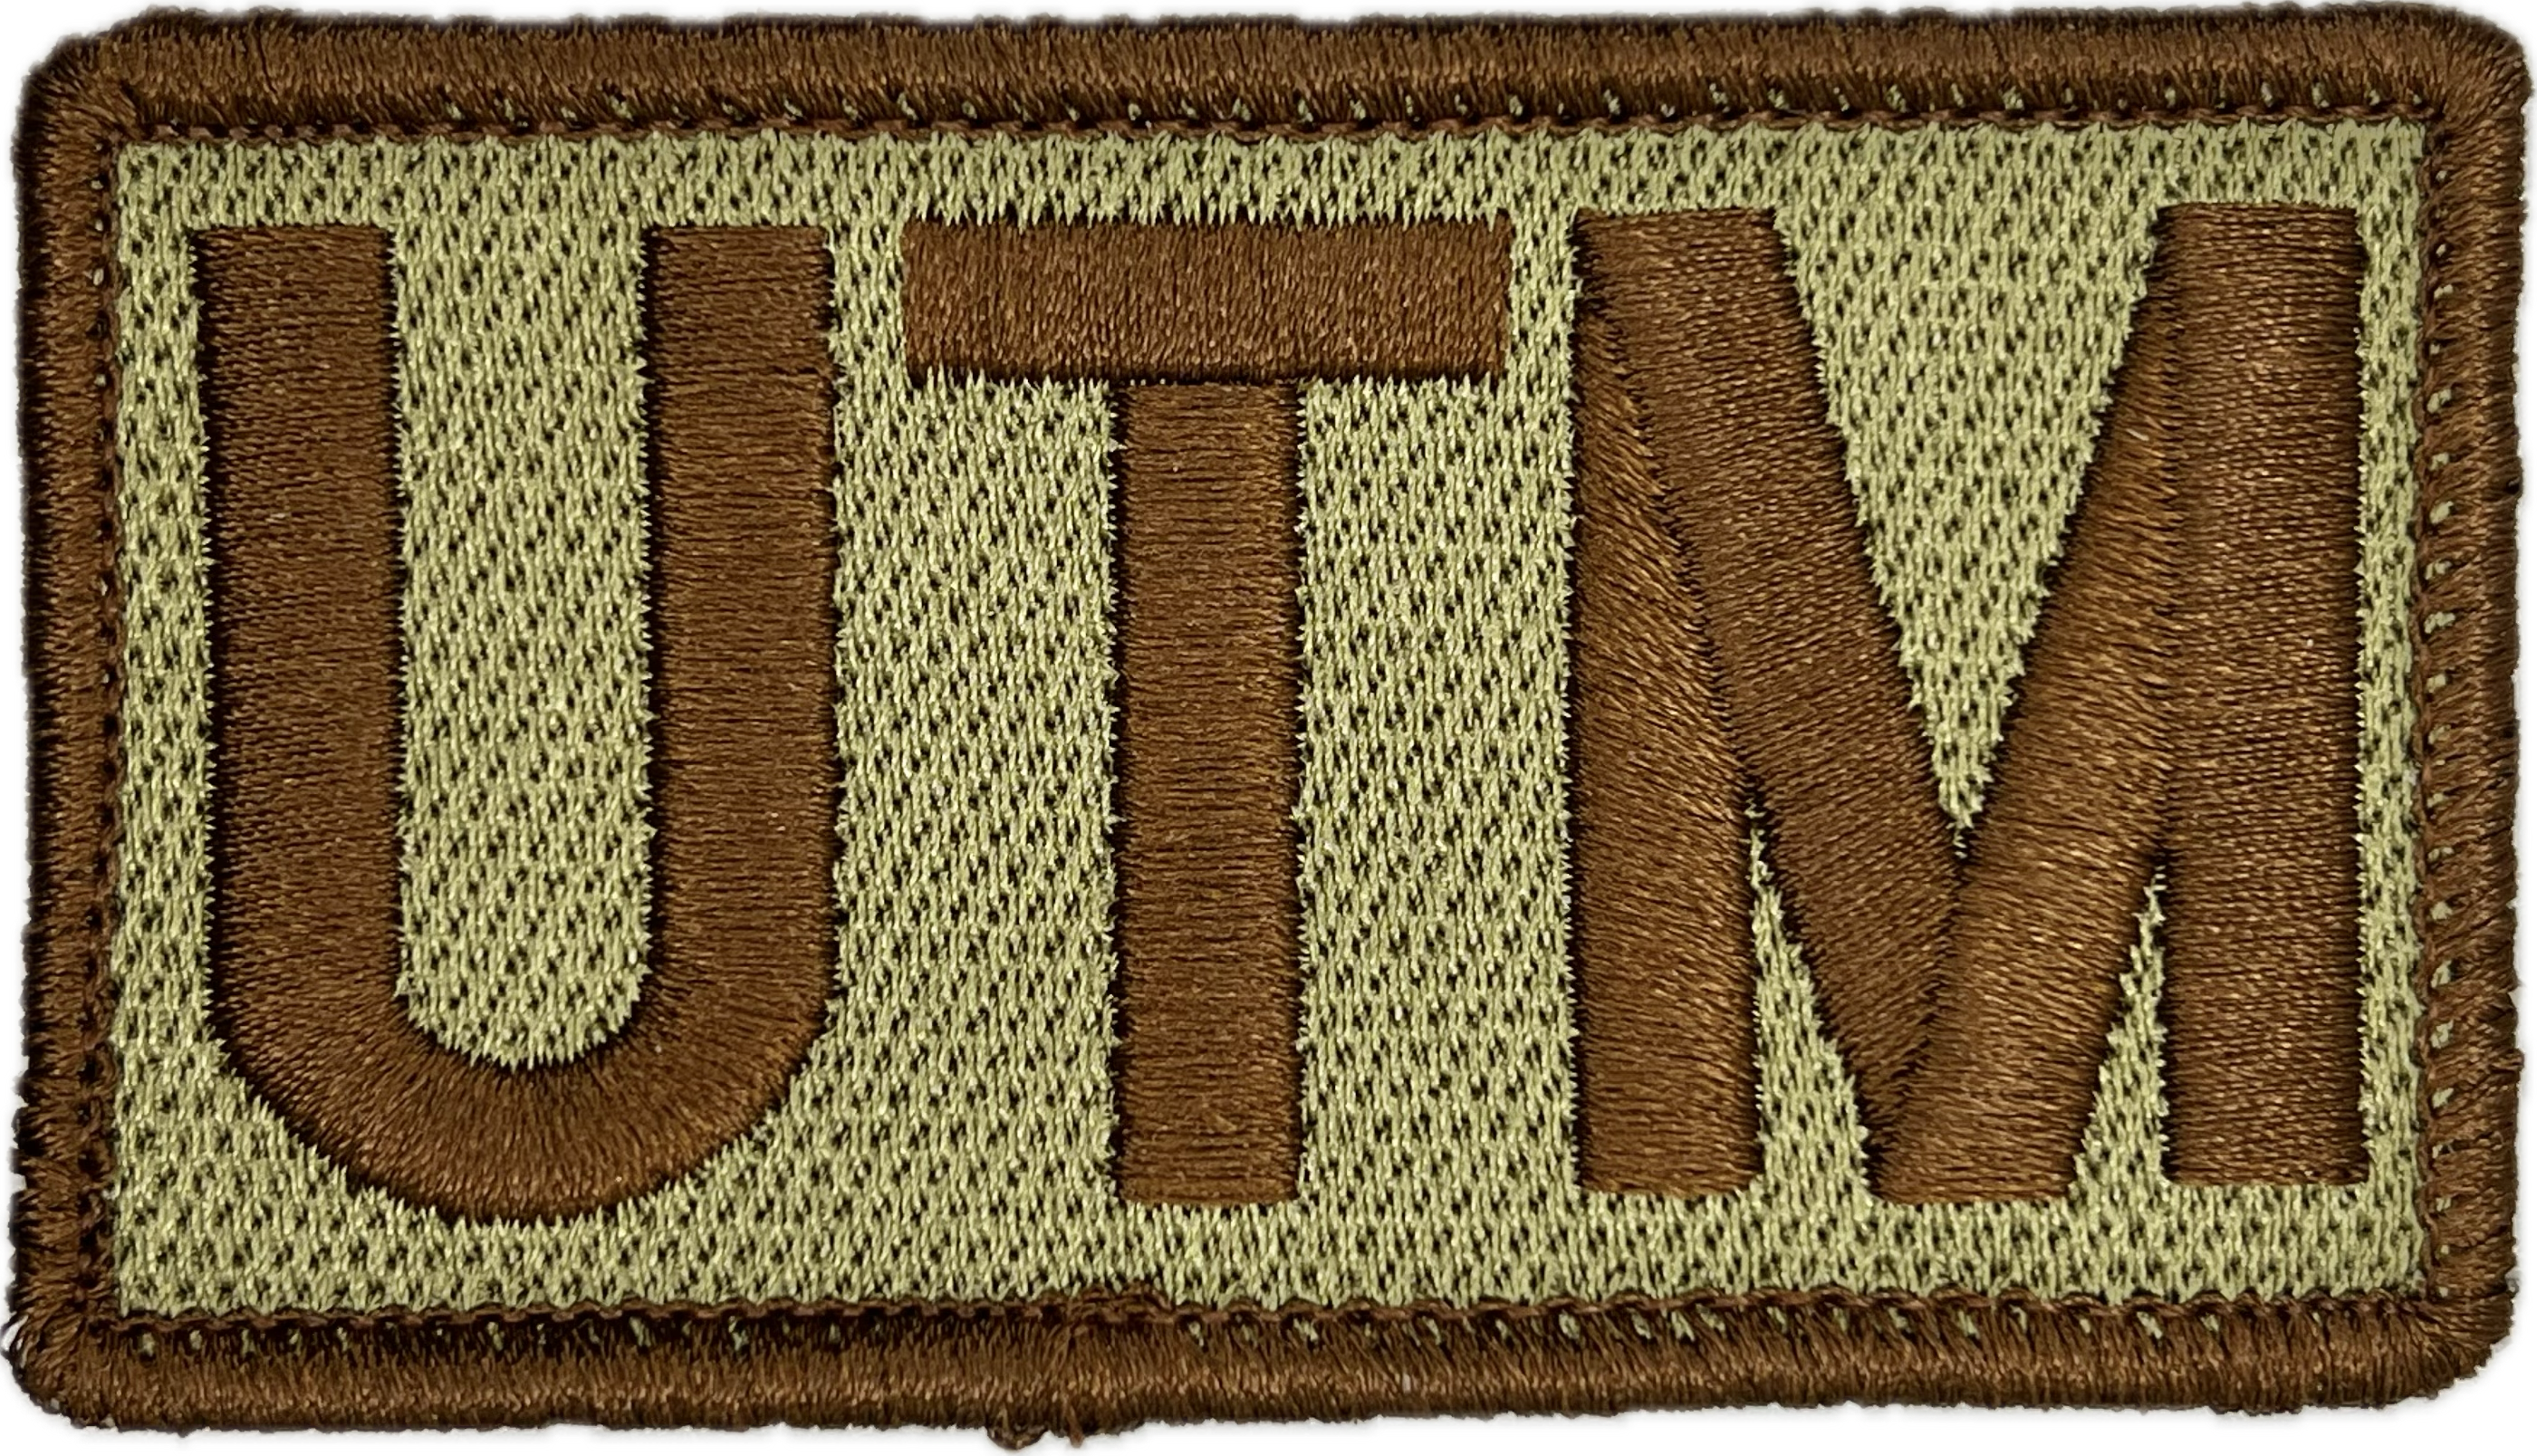 UTM - Duty Identifier Patch